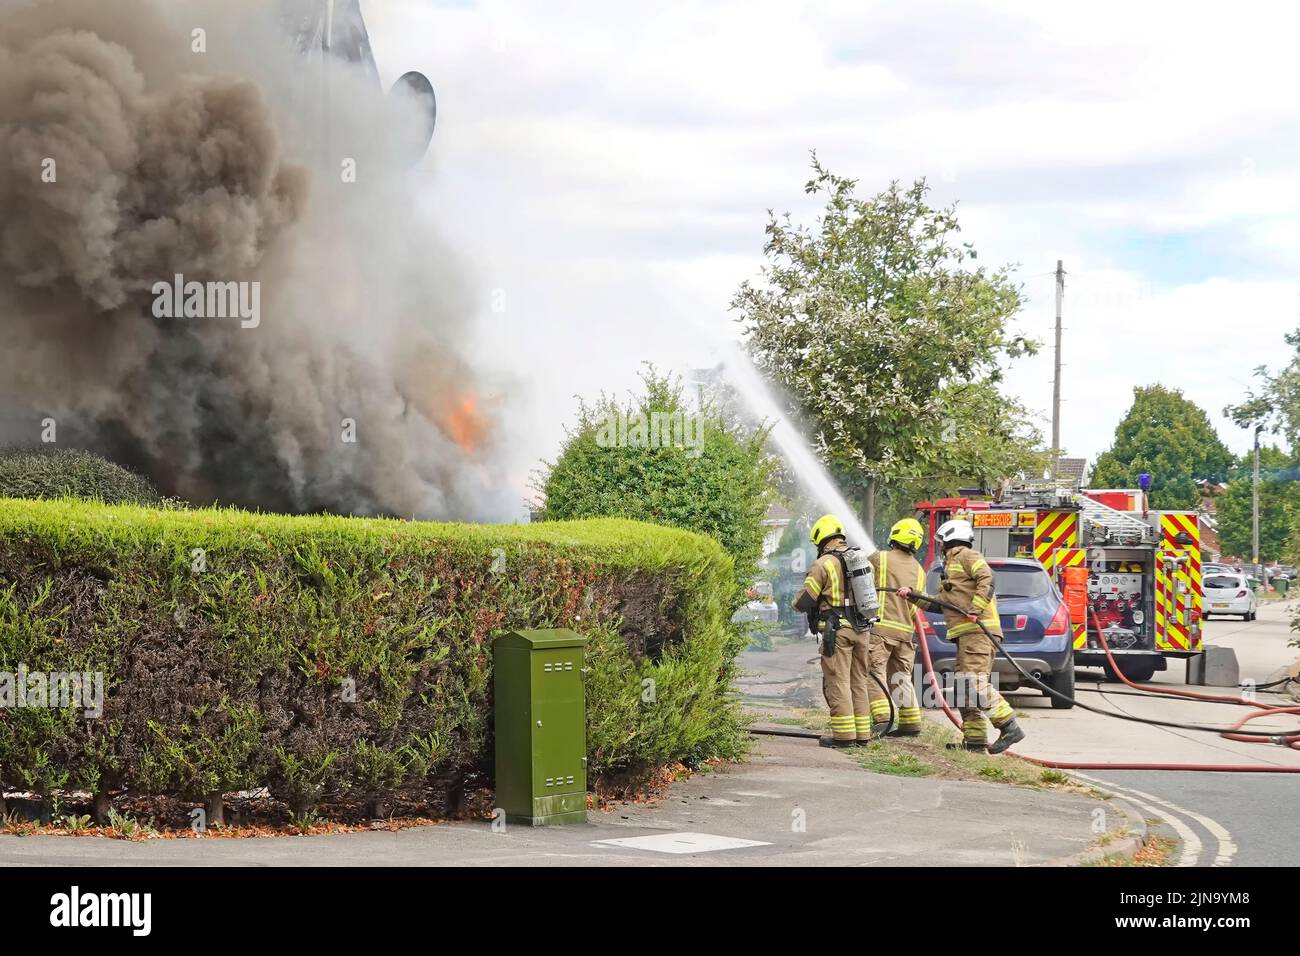 Essex Fire and Rescue Service Feuerwehrmann & Feuerwehrgruppe Feuerwehrmänner Feuerwehrmänner sprühen Wasserstrahl auf den Hausbrand Rauch und Flammen England Großbritannien Stockfoto